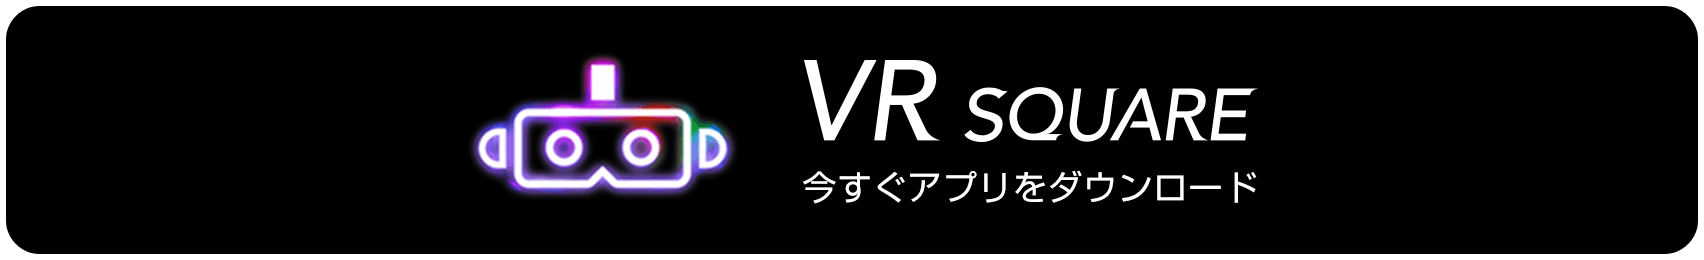 VR SQUARE 今すぐアプリをダウンロード